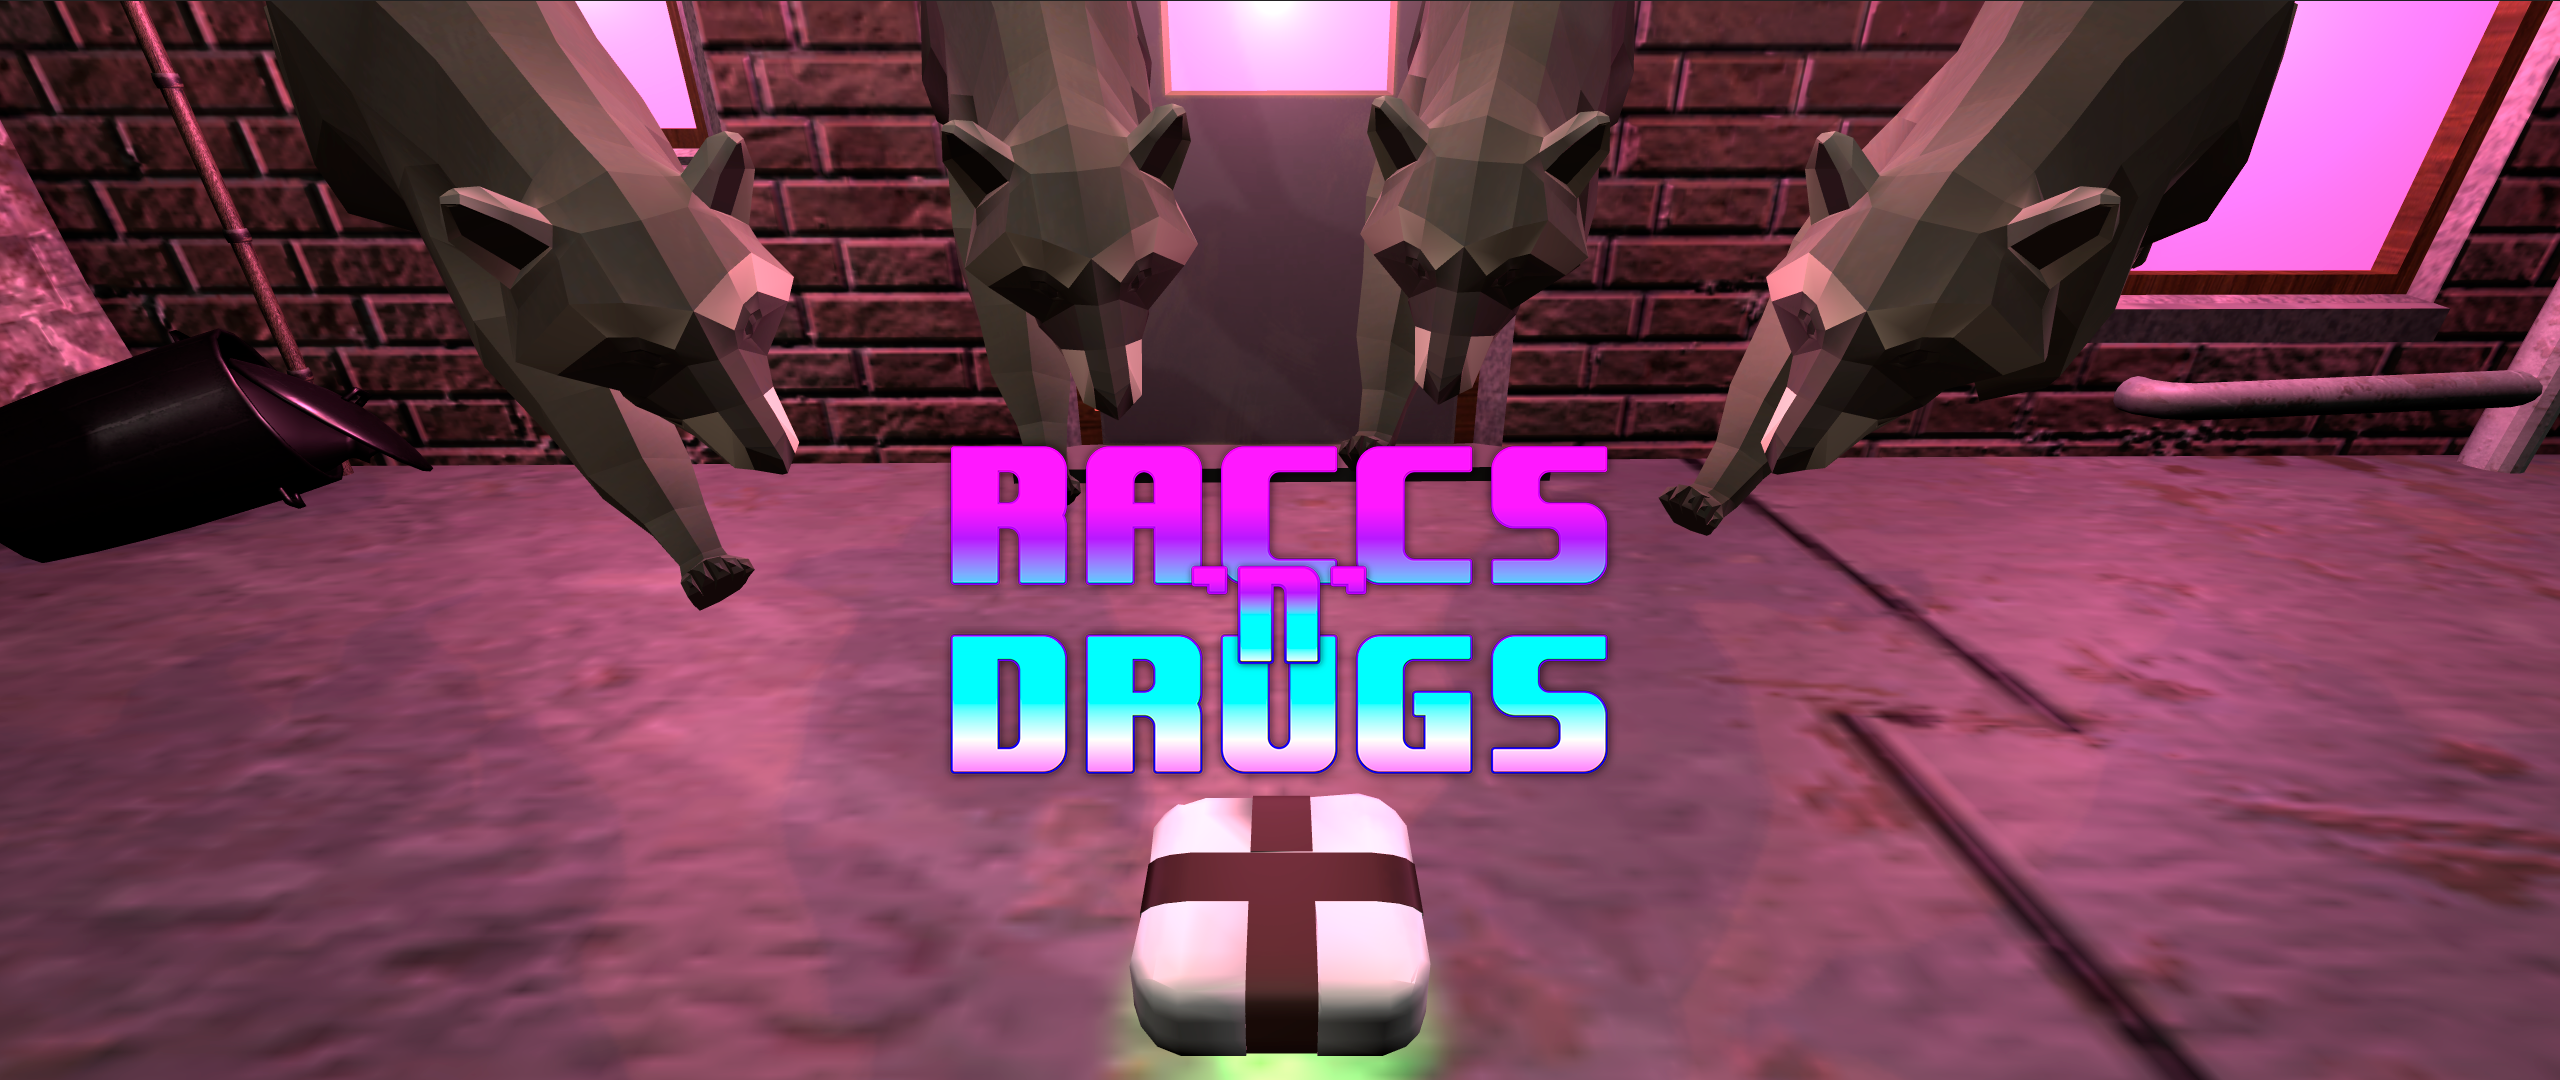 Raccs'n'Drugs